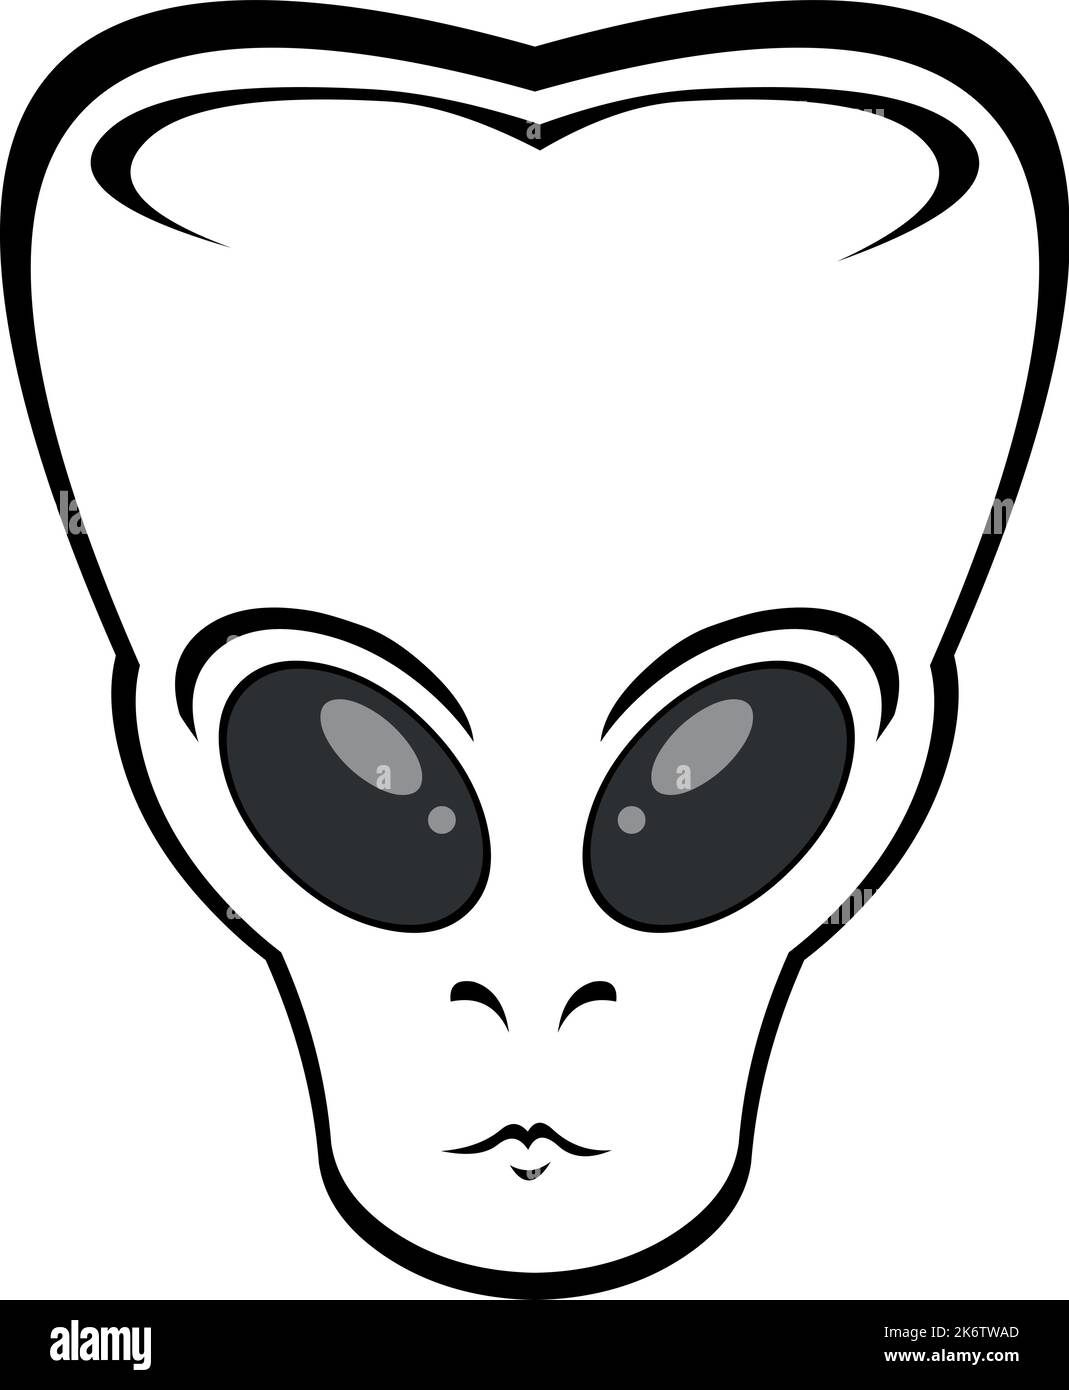 Illustrazione vettoriale della testa di un alieno disegnato in bianco e nero Illustrazione Vettoriale